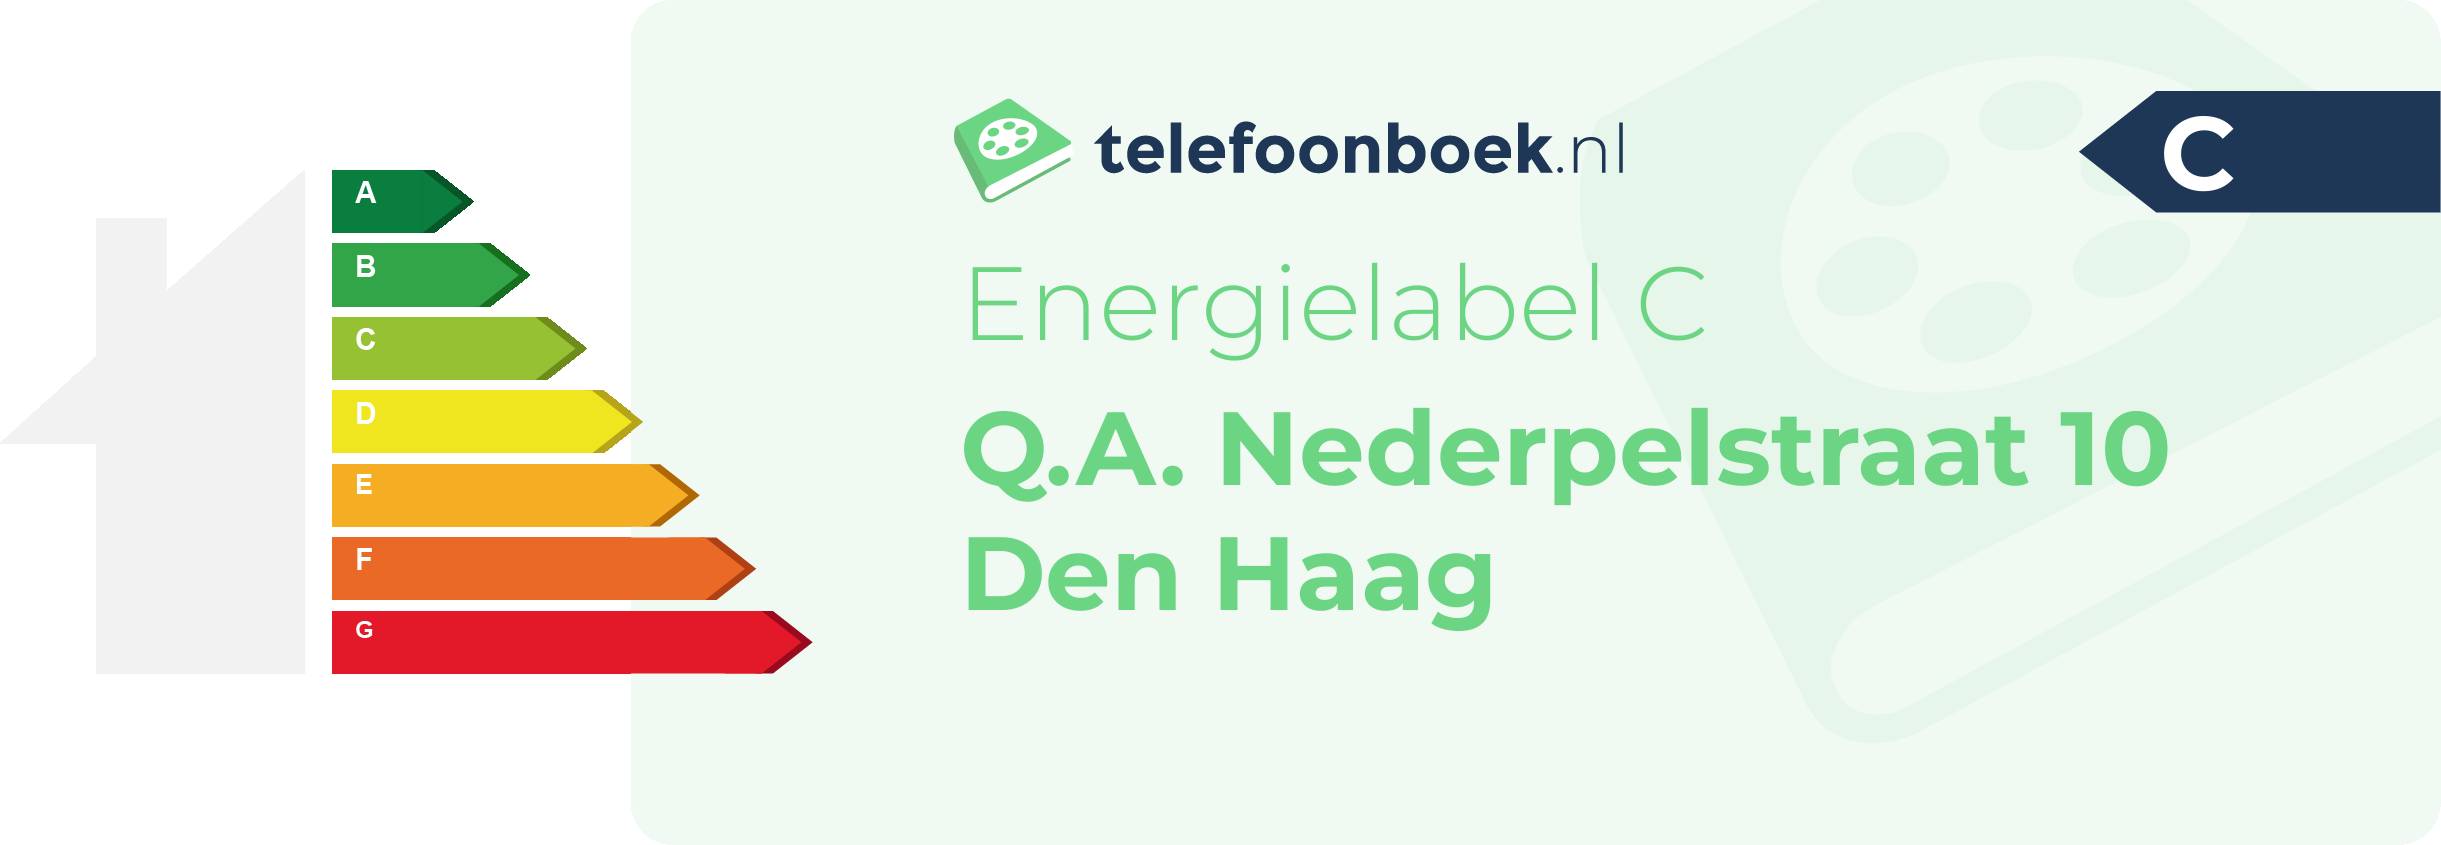 Energielabel Q.A. Nederpelstraat 10 Den Haag